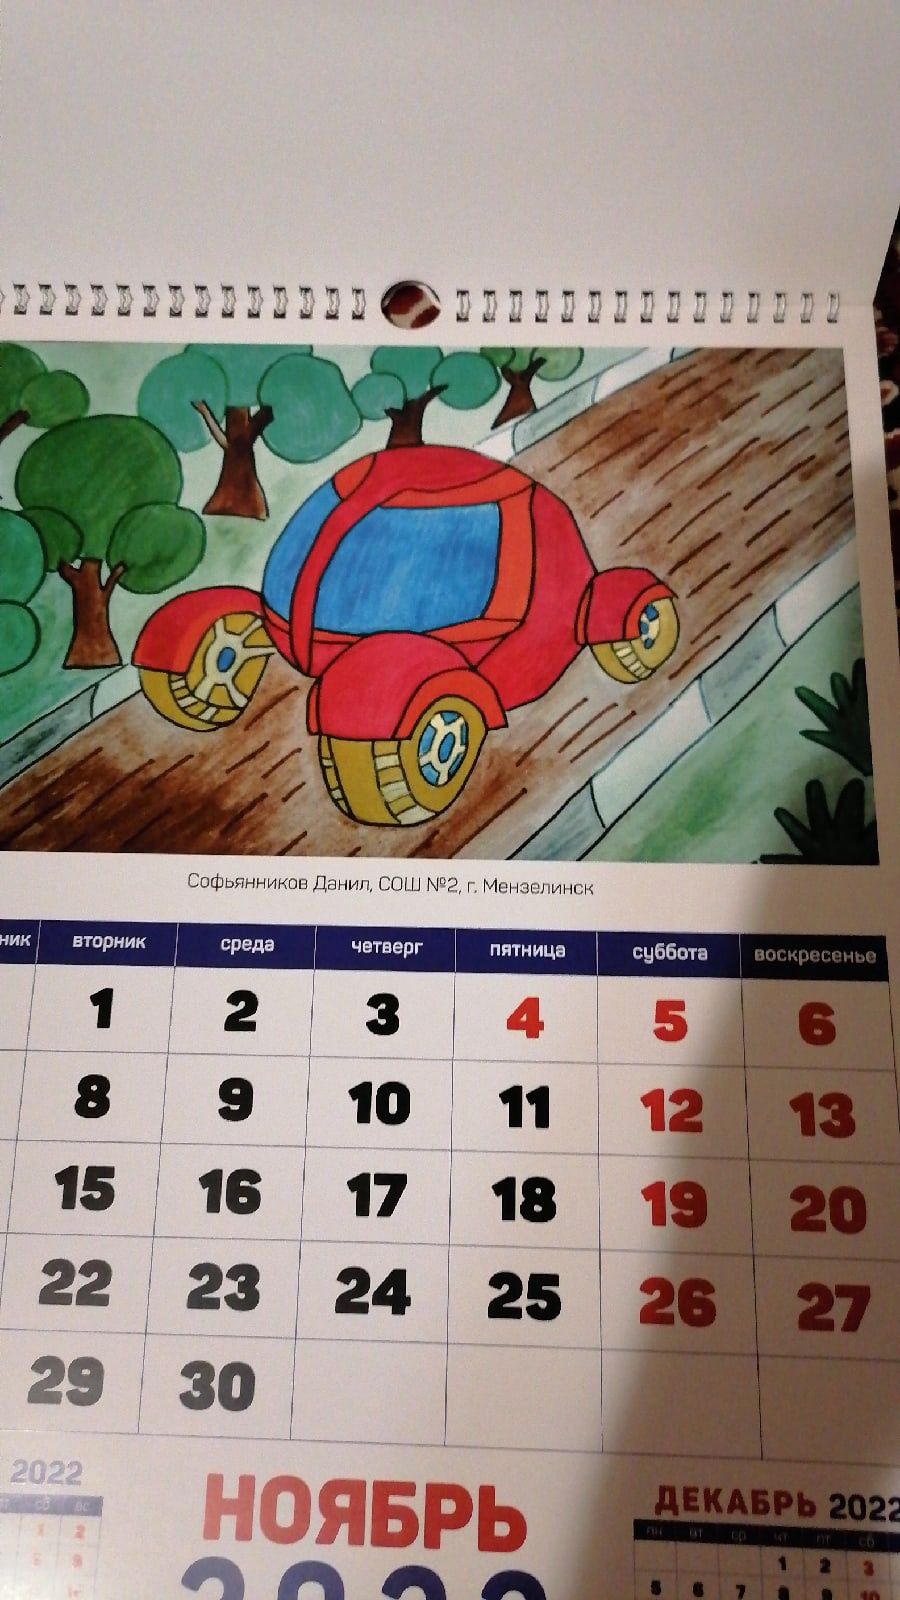 Рисунок автомобиля будущего, сделанный Данилом Софьянниковым, размещен в календаре